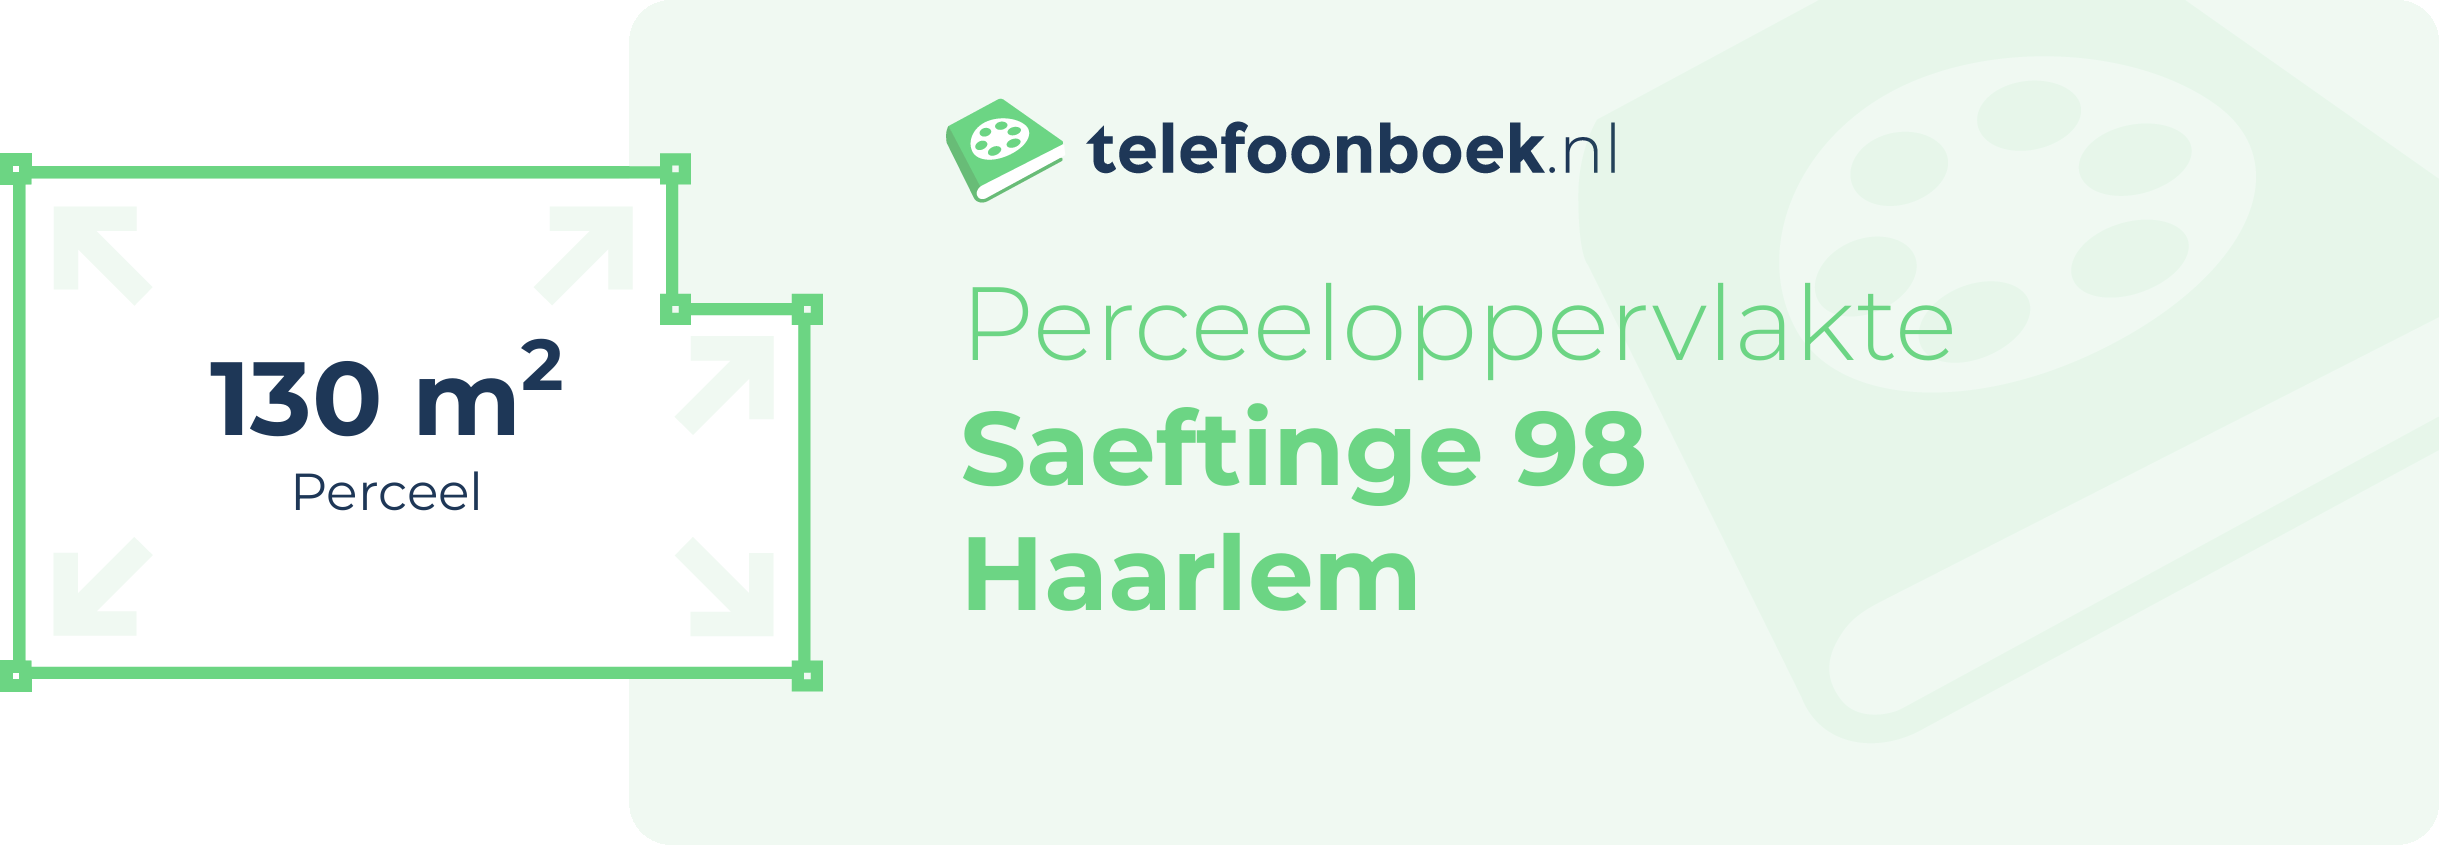 Perceeloppervlakte Saeftinge 98 Haarlem